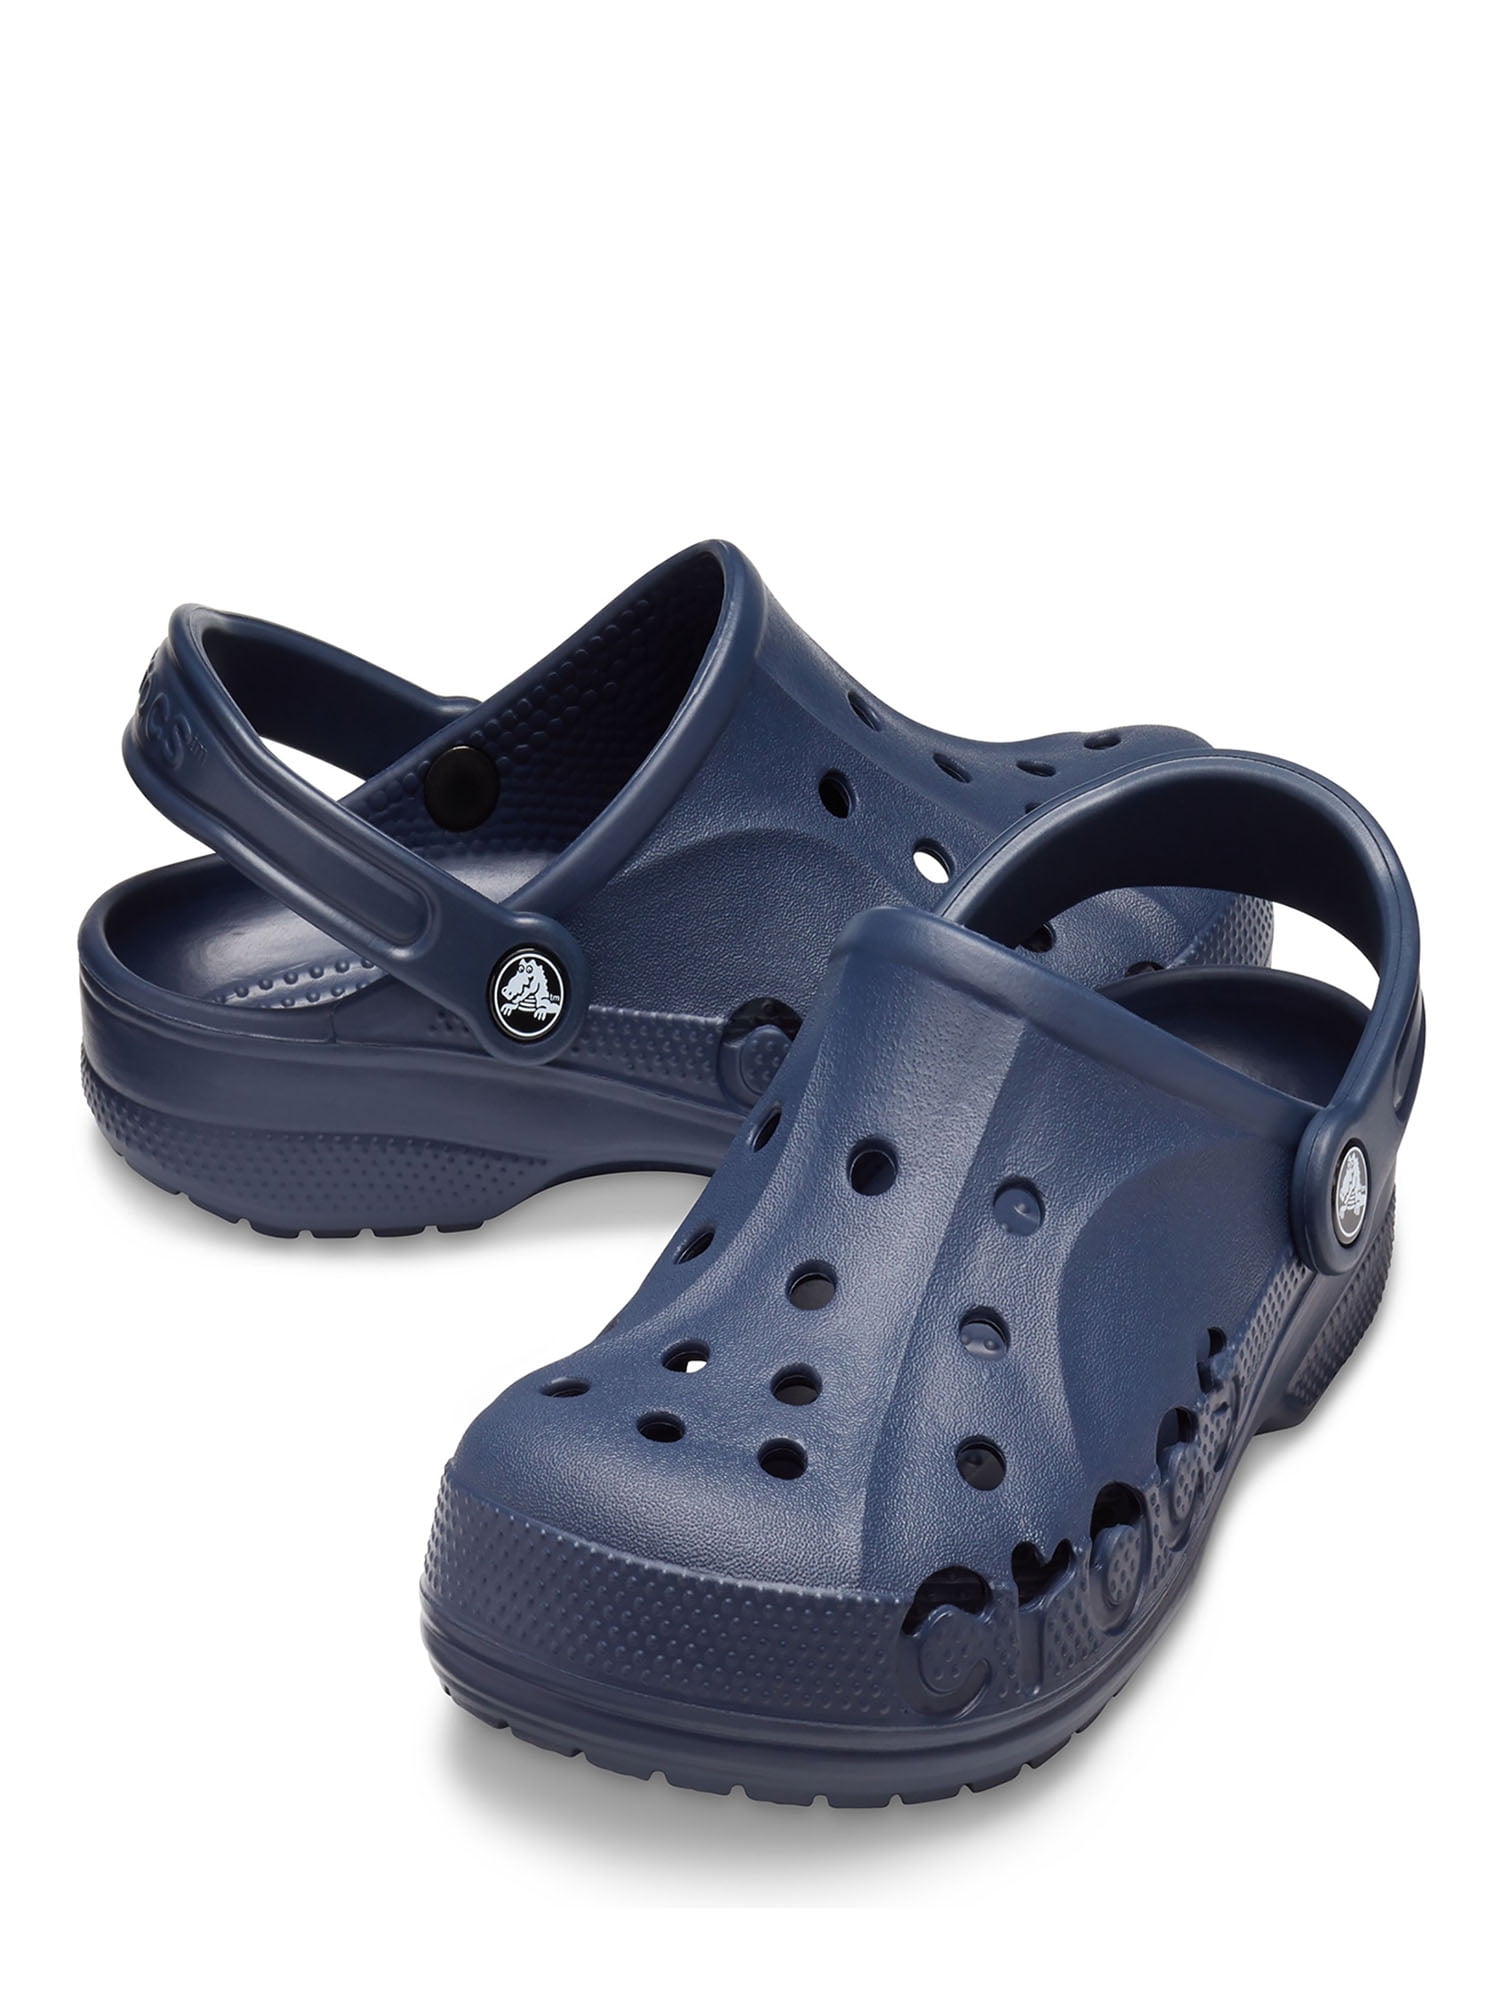 Сабо крокс мужские. Сабо Crocs Classic Clog. Crocs Classic Clog синие мужские. Crocs клоги Classic. Шлёпки сабо Crocs Classic Clog.